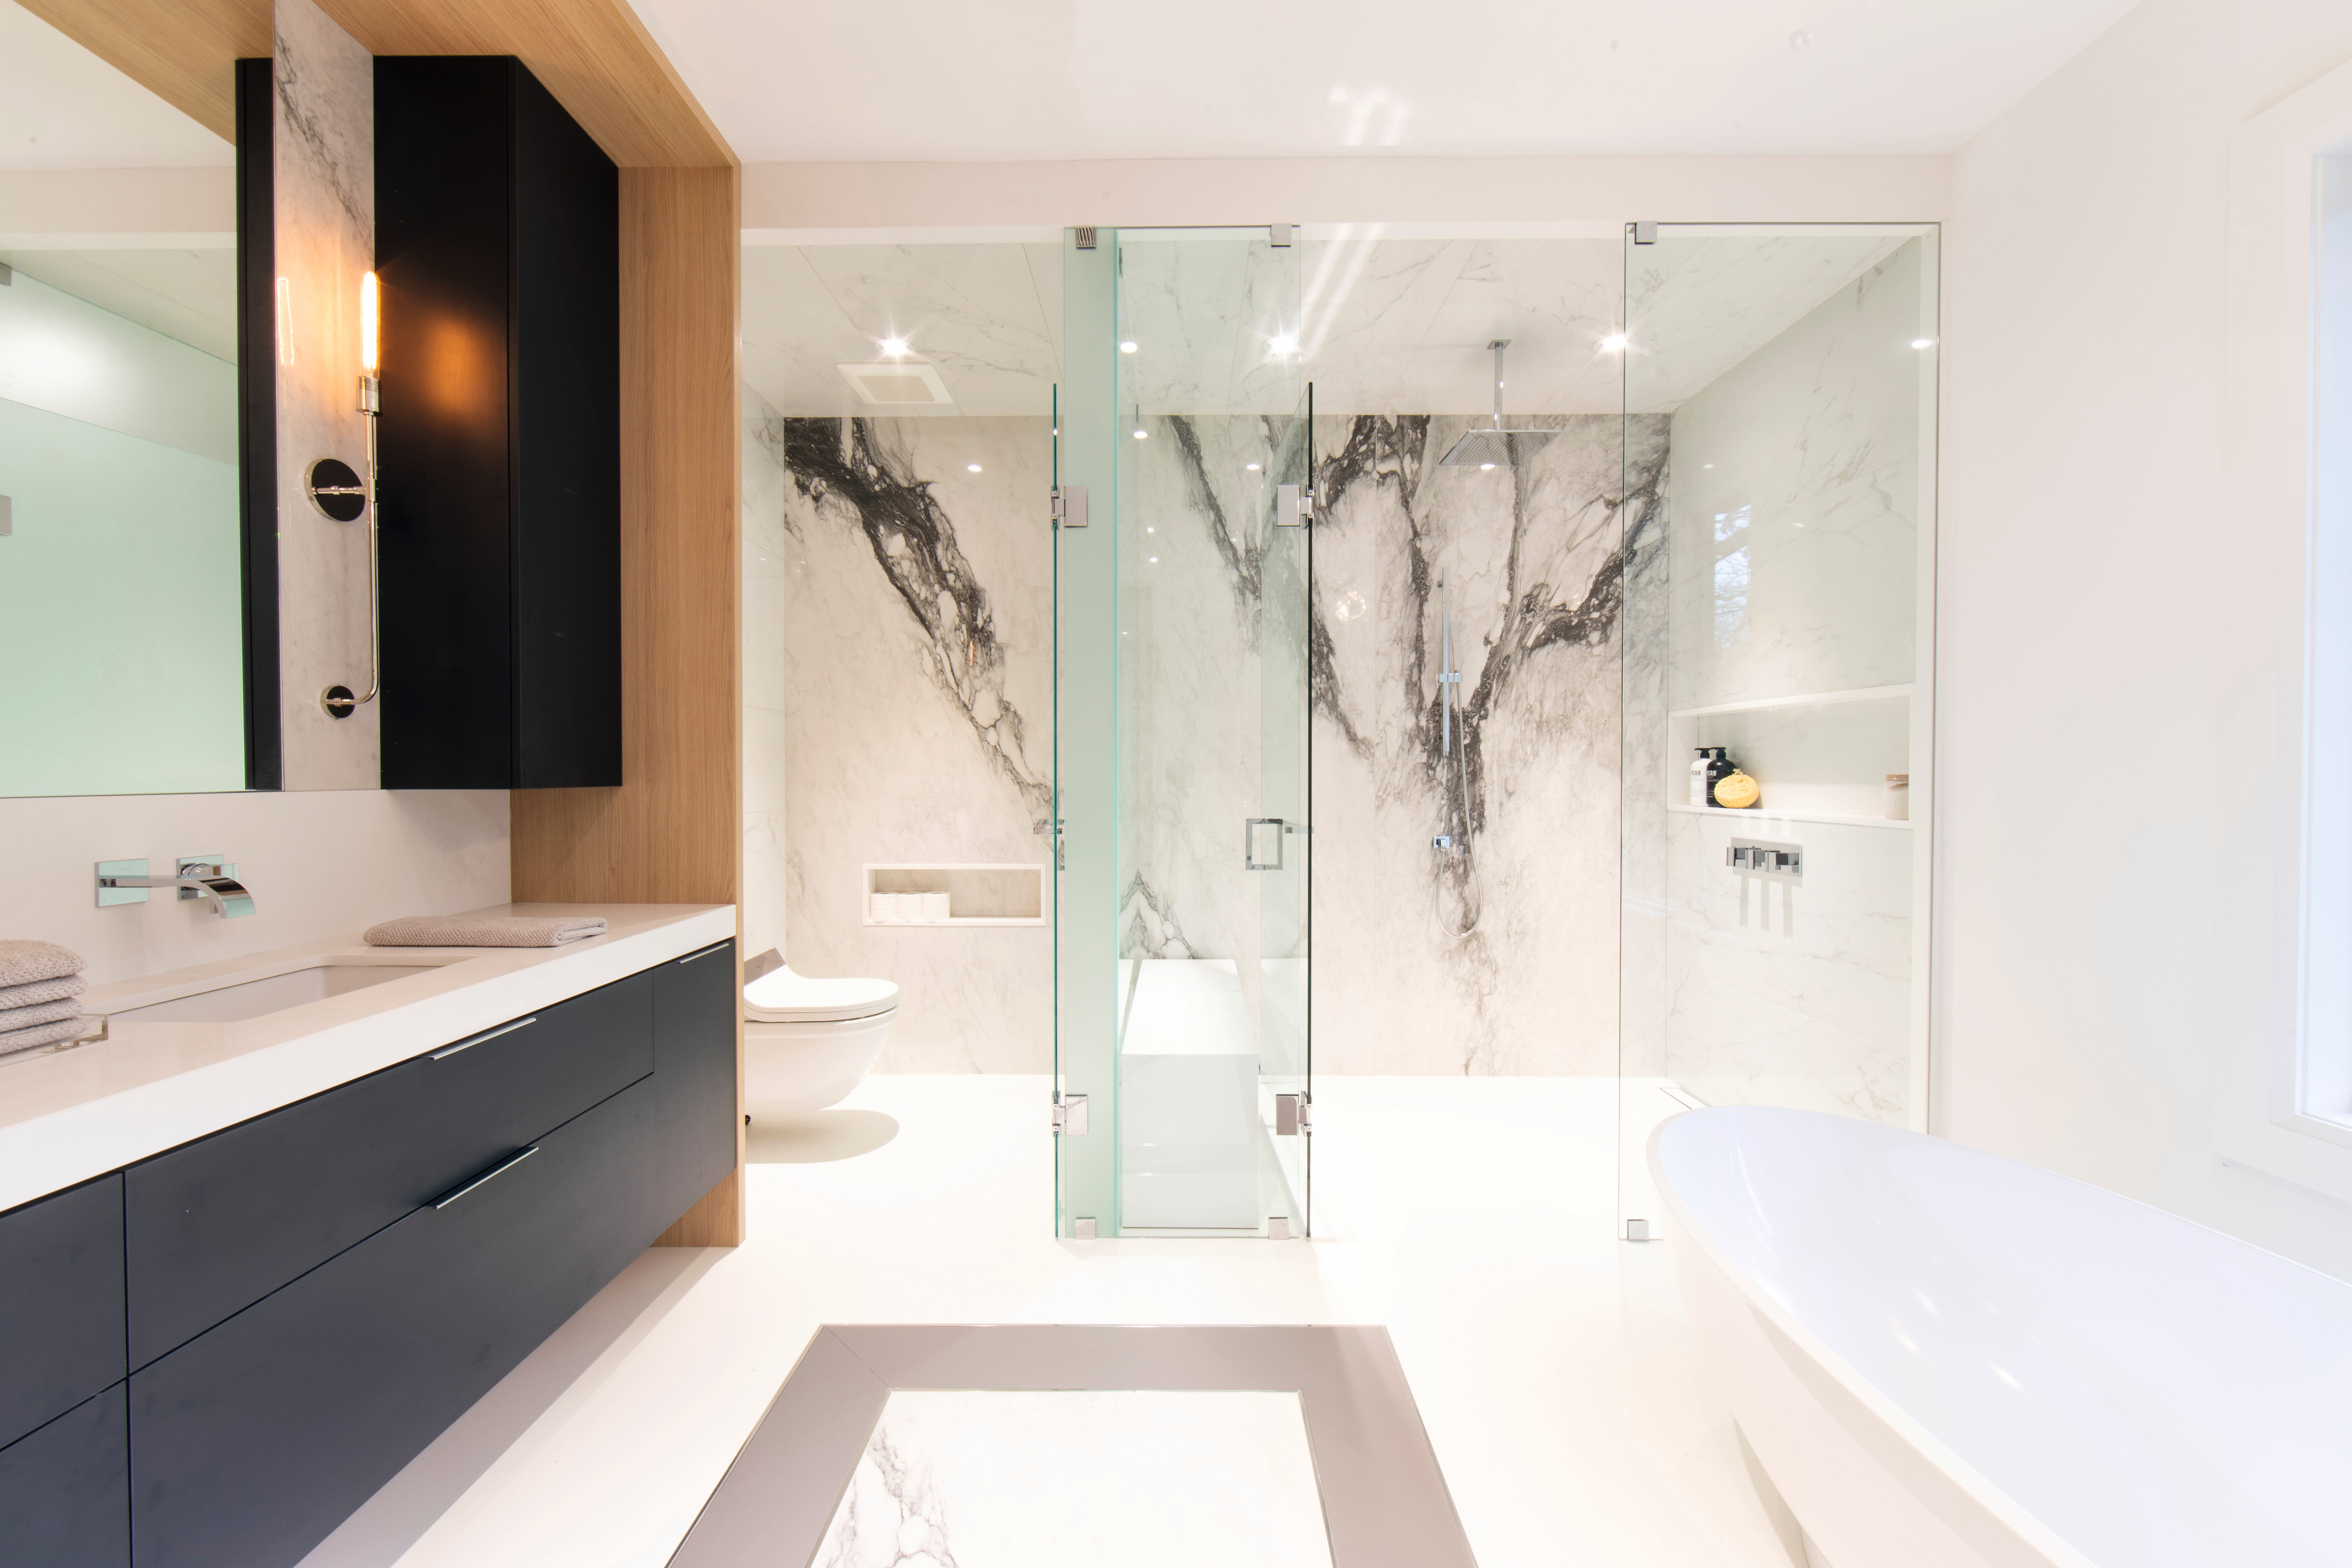 Quelques notes de noir viennent agréablement ponctuer ce décor clair au rendu naturel, tandis que le marbre transforme avec élégance la salle de bains en une oasis de bien-être.